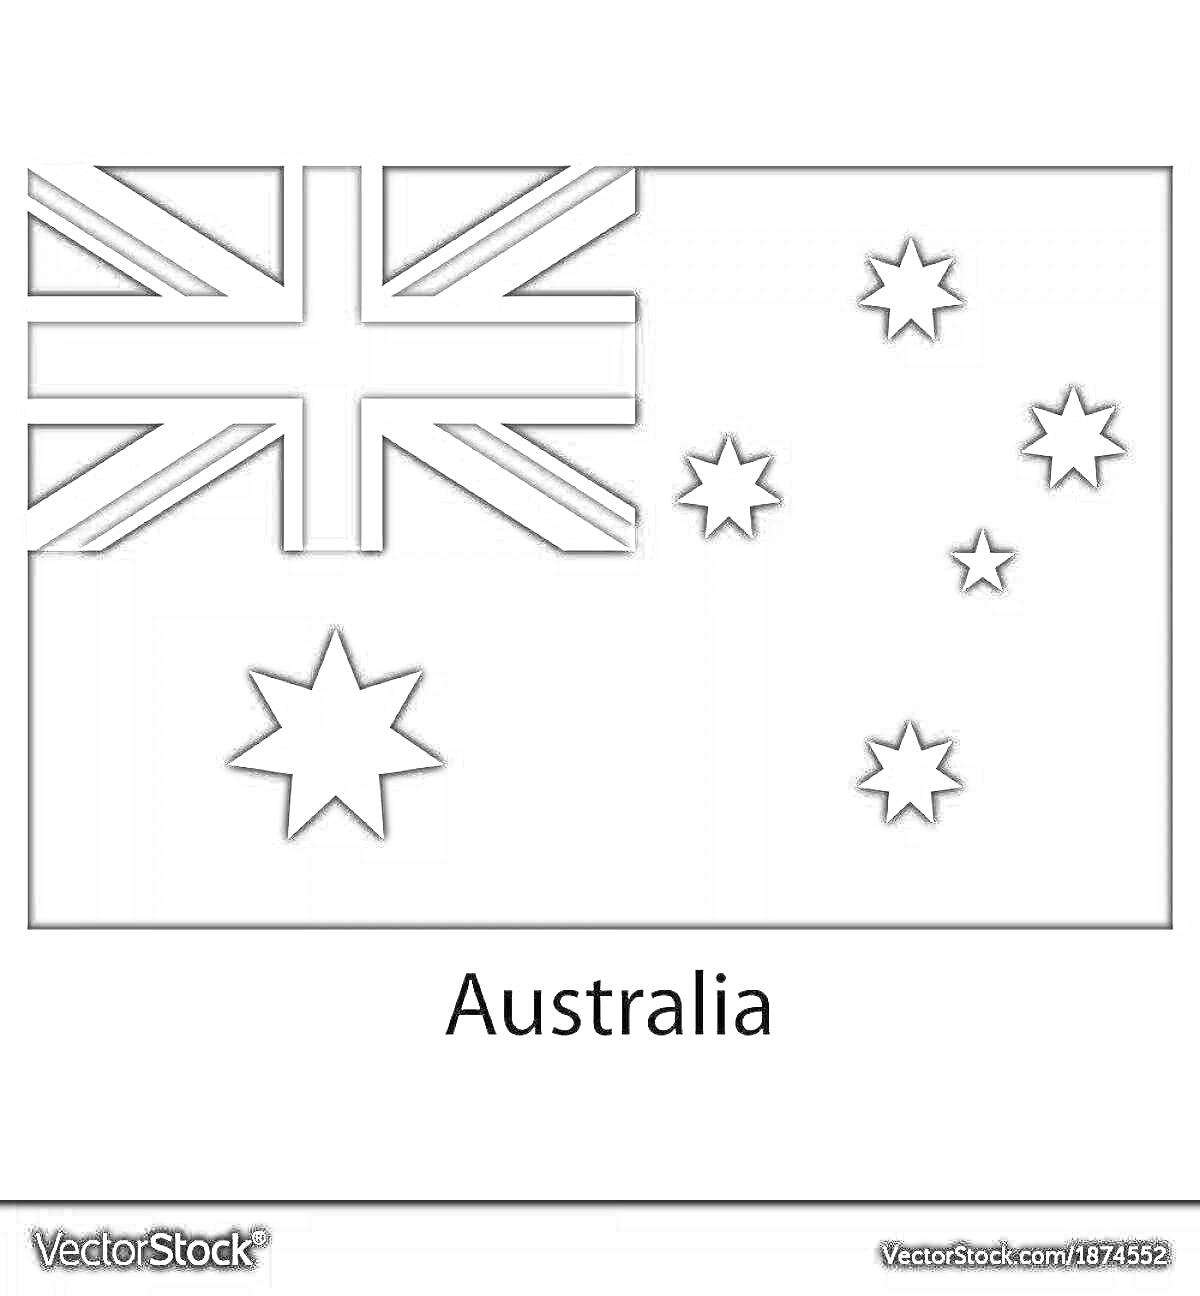 Раскраска раскраска флага Австралии с элементами Юнион Джека и звезд Южного Креста